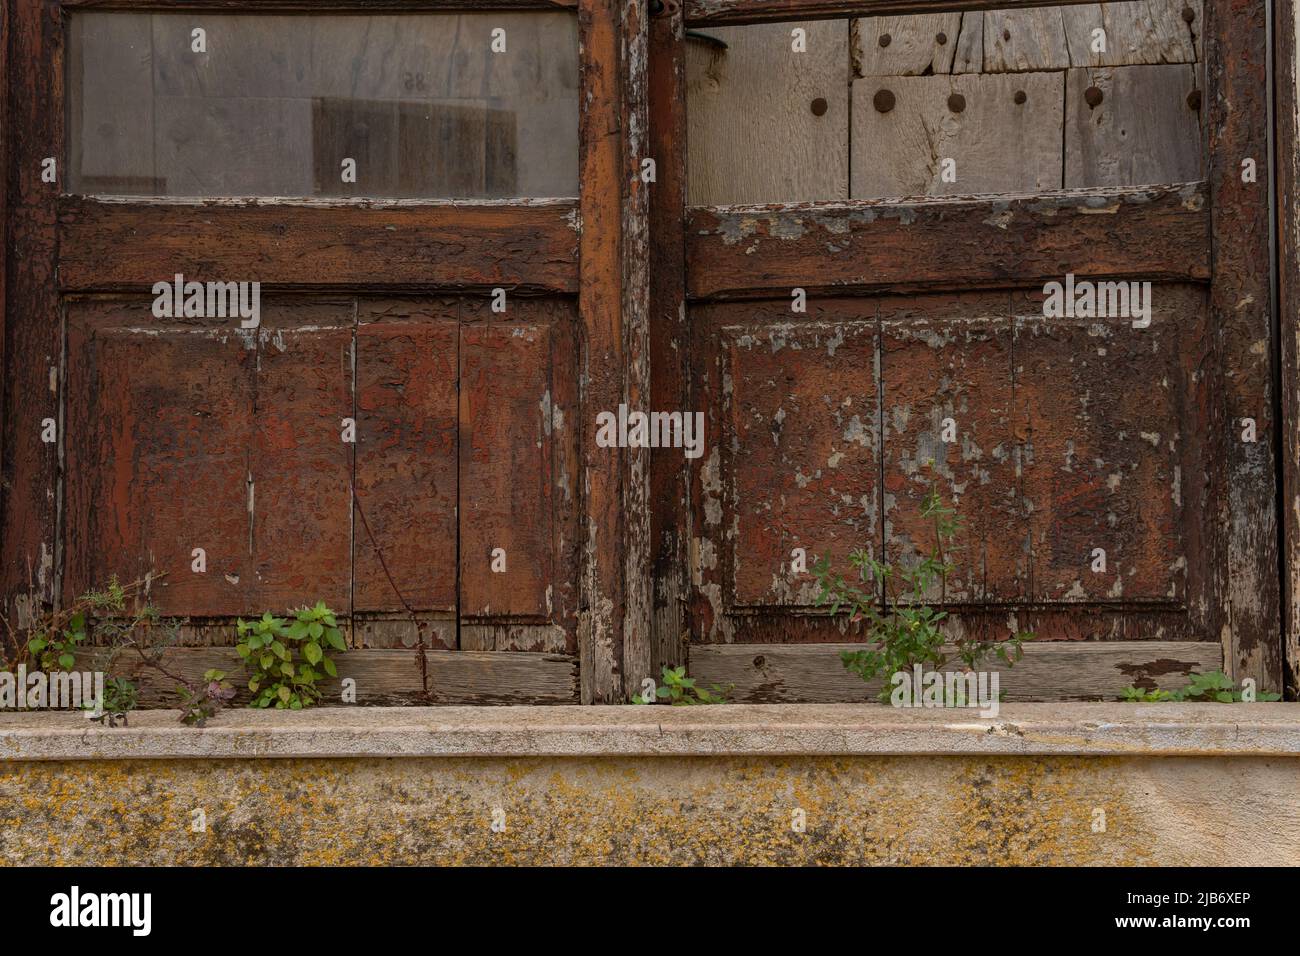 Primo piano di una porta in legno e vetro di una casa, in stato di abbandono e rovina. Case abbandonate nelle zone rurali della Spagna Foto Stock